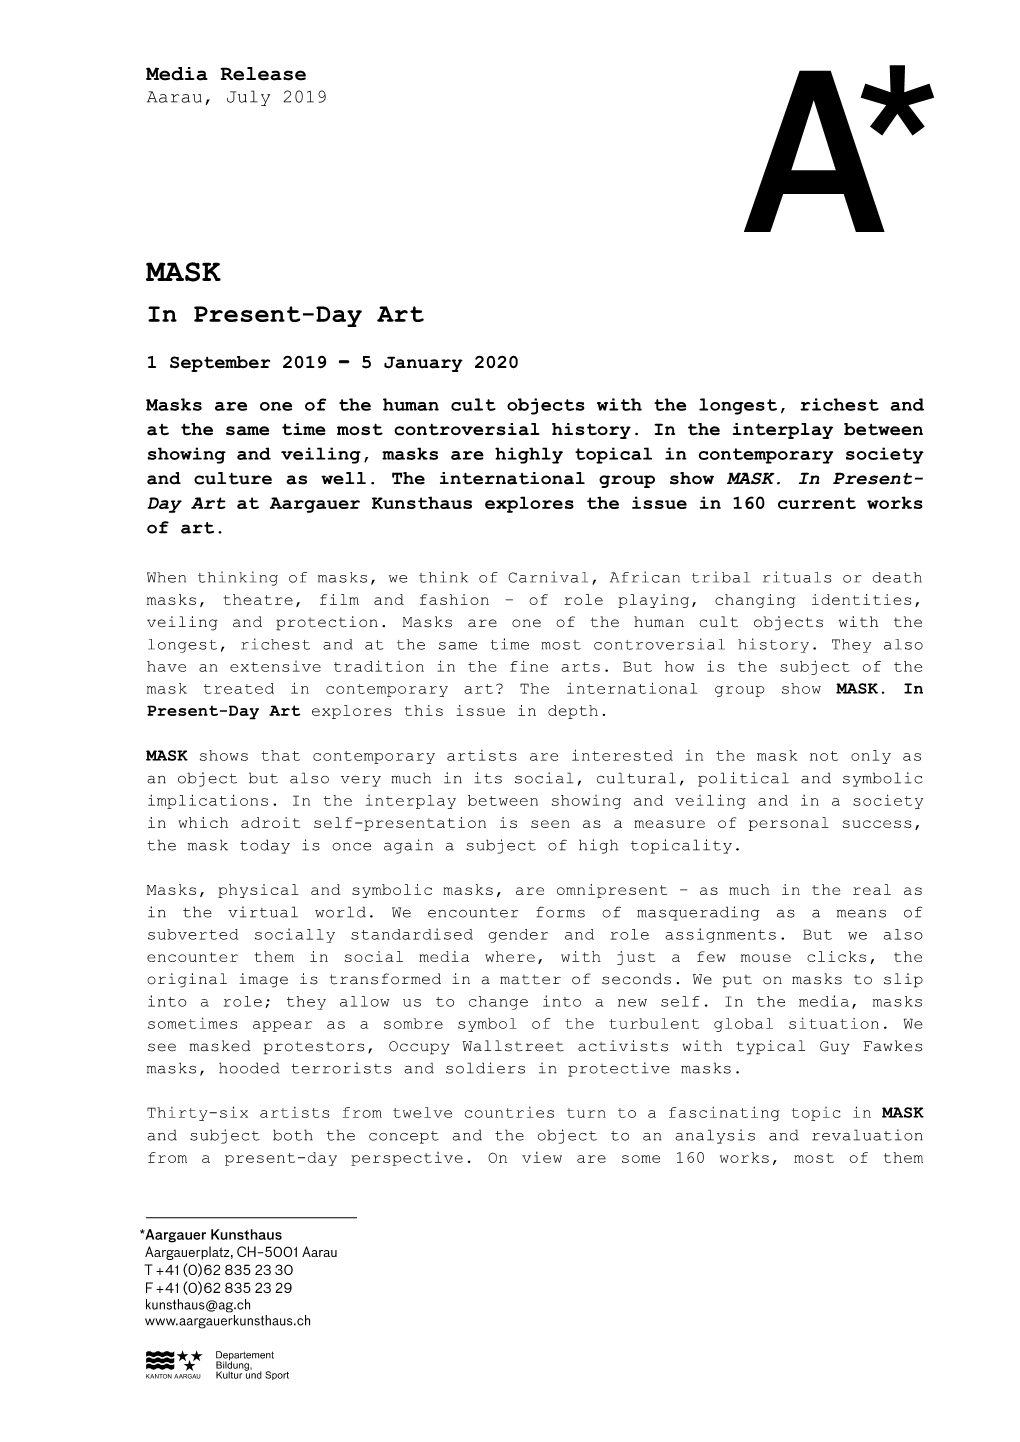 Media Release, Aargauer Kunsthaus, Aarau, July 2019: MASK. in Present